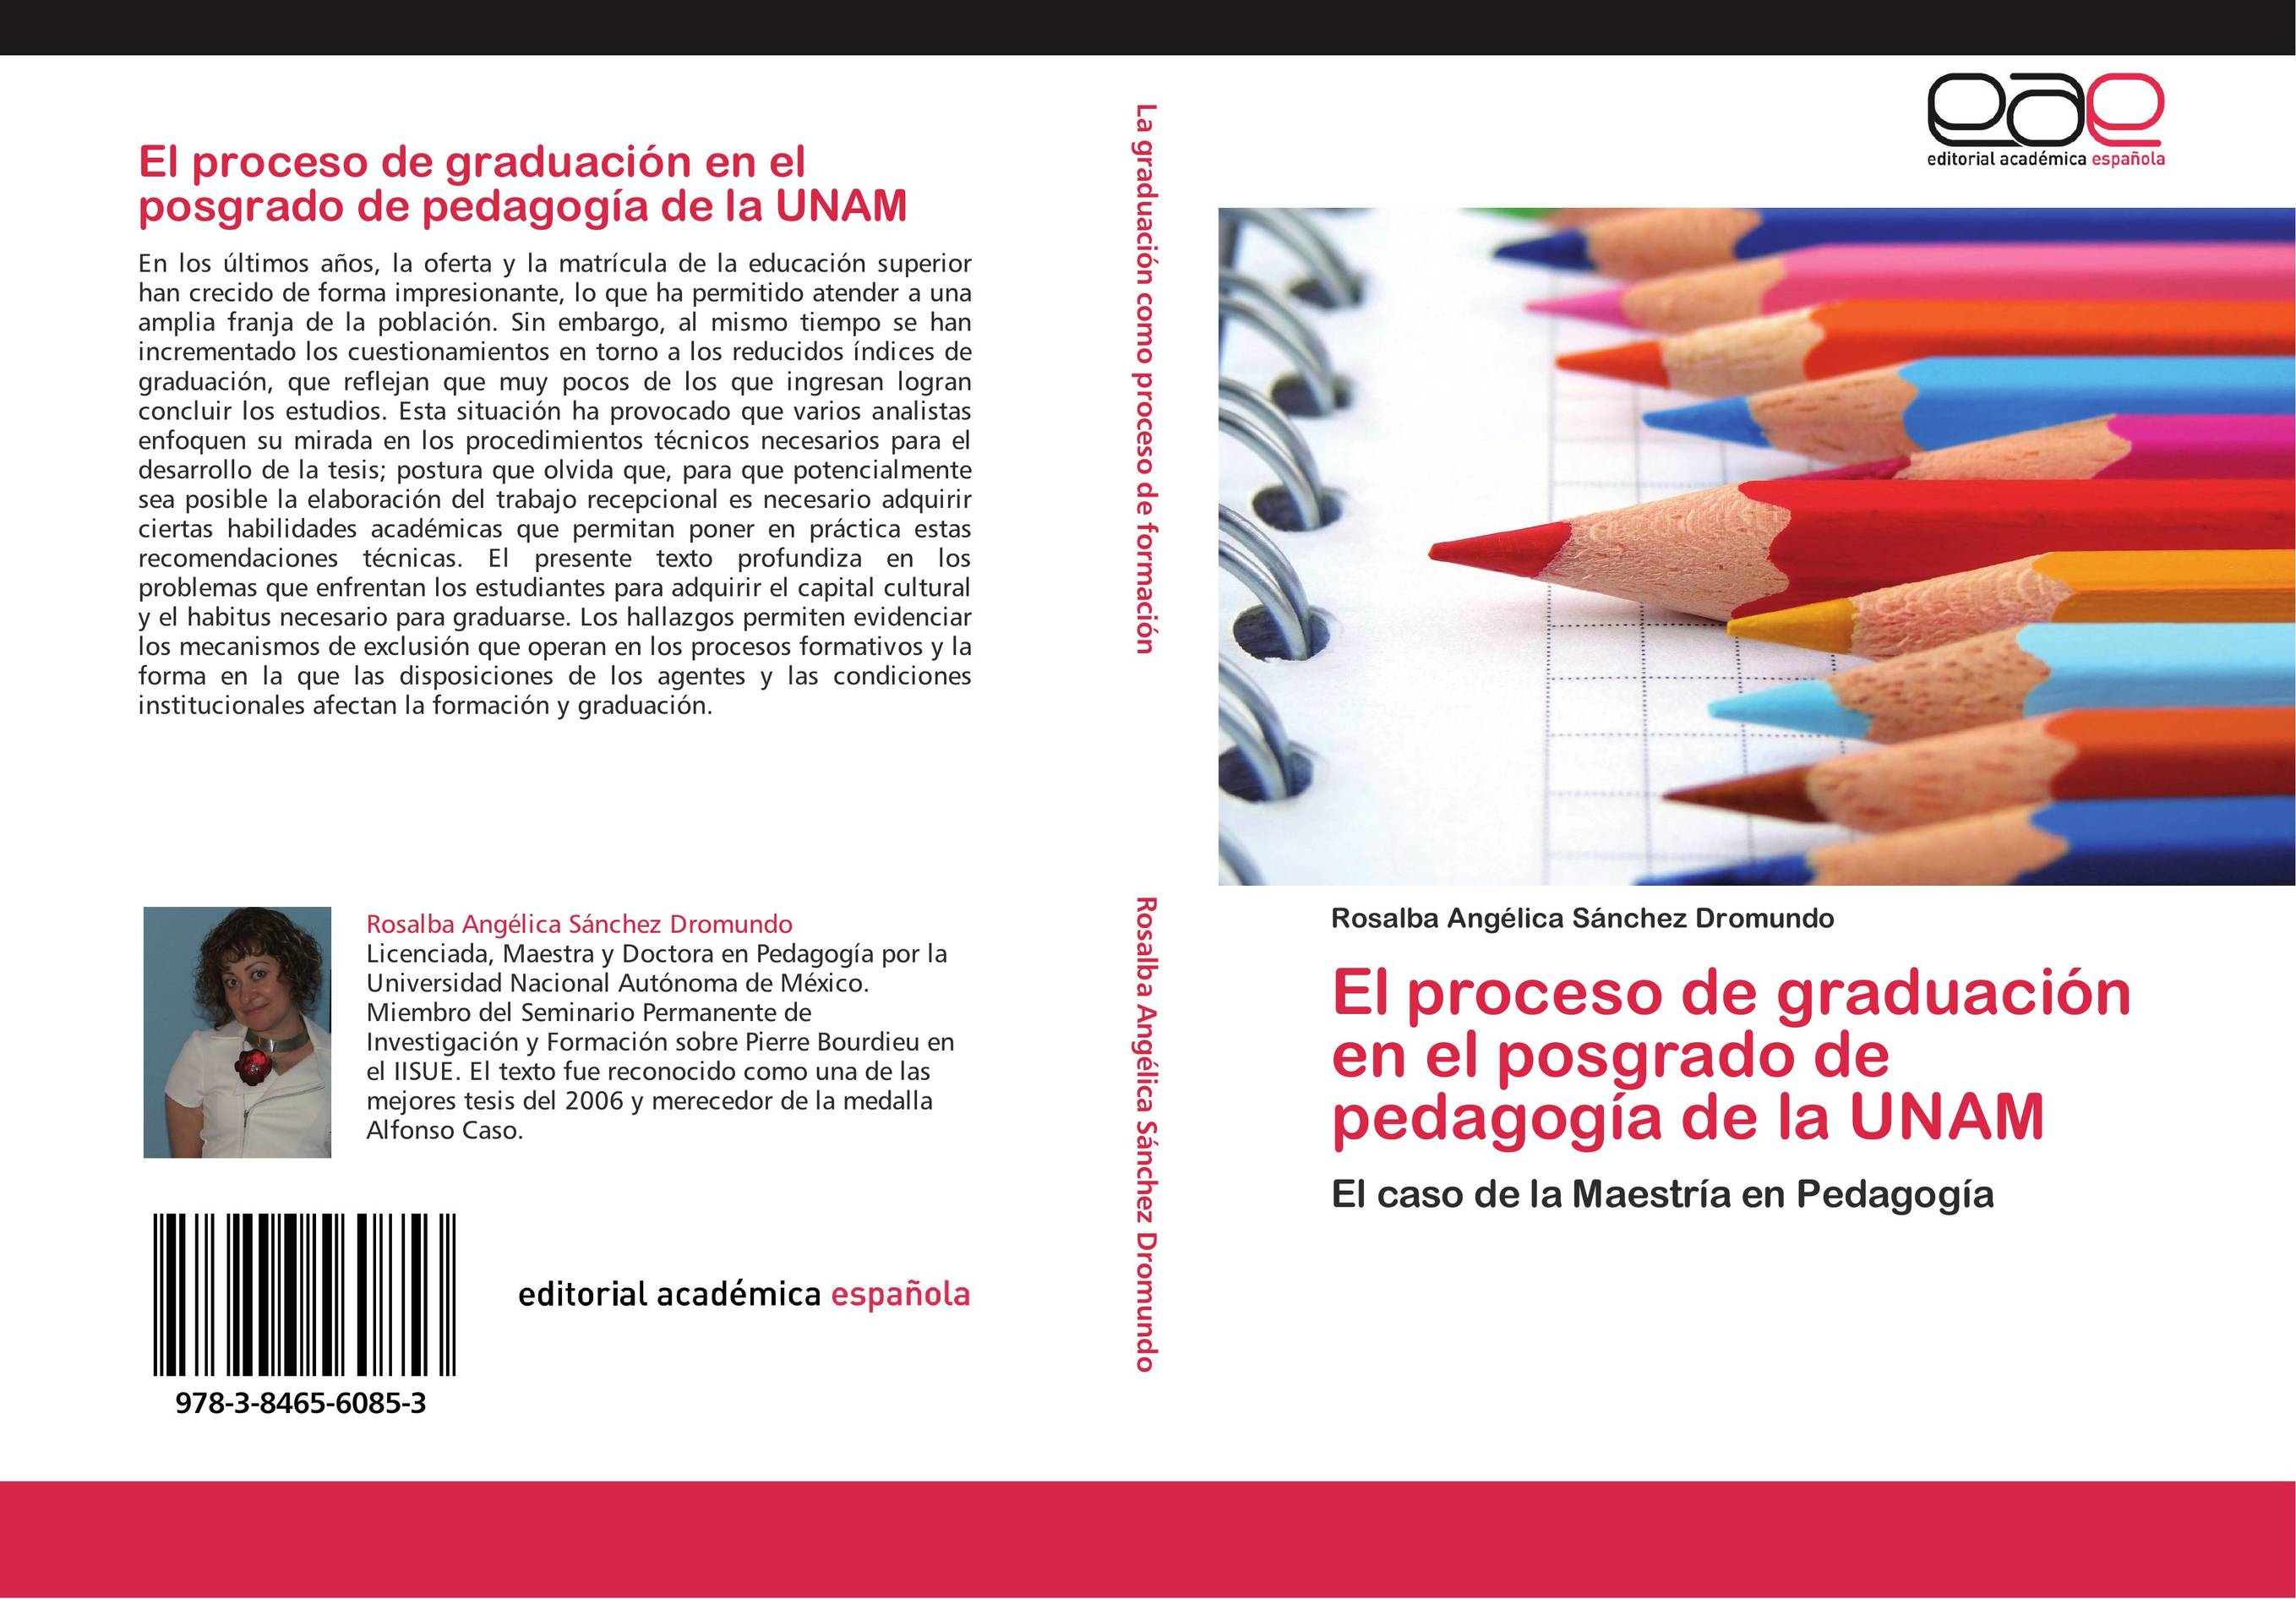 El proceso de graduación en el posgrado de pedagogía de la UNAM